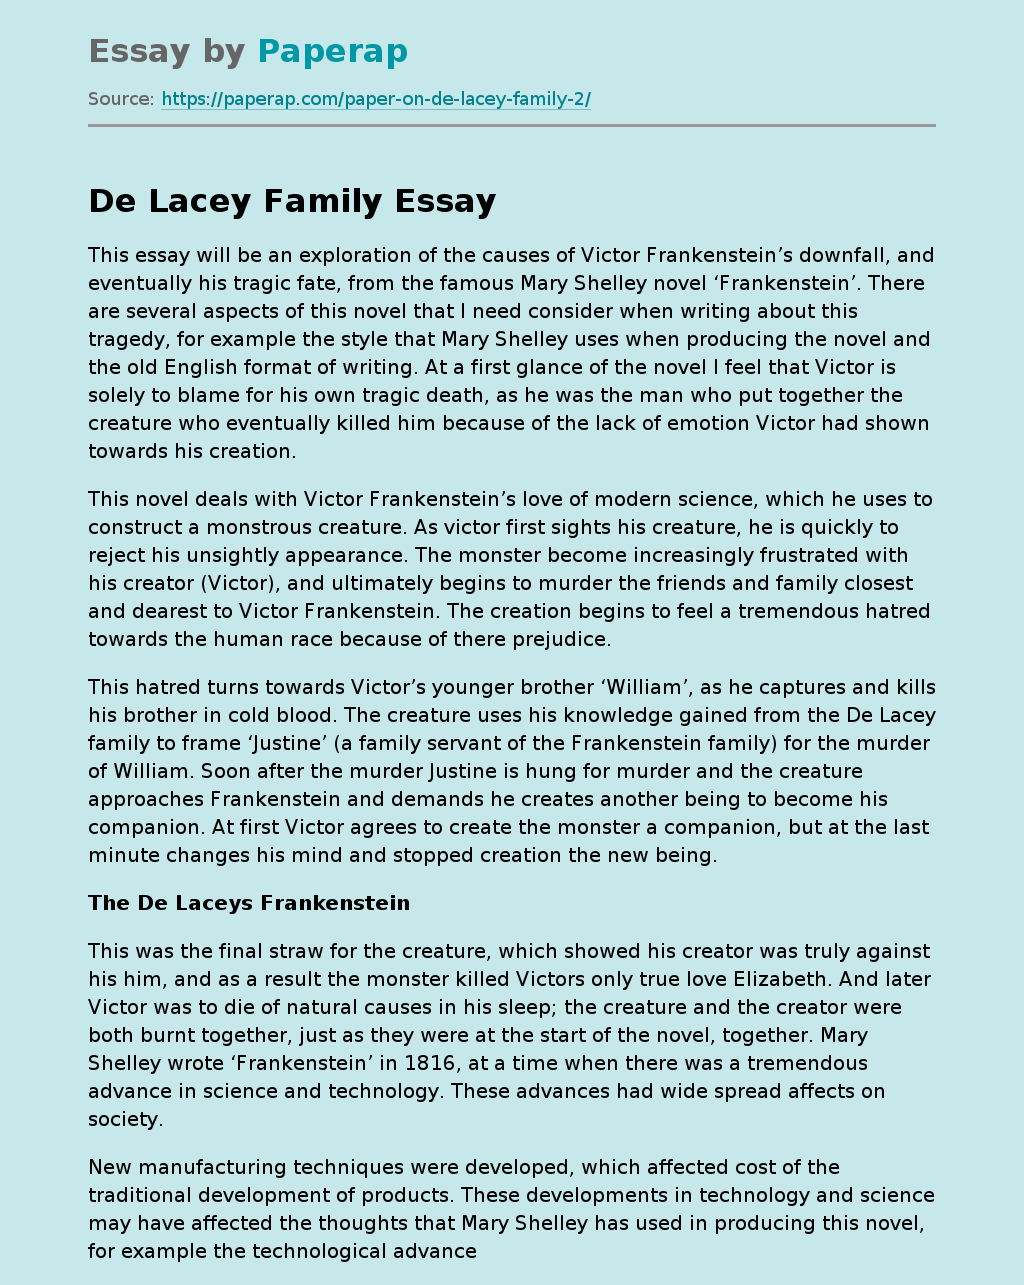 De Lacey Family